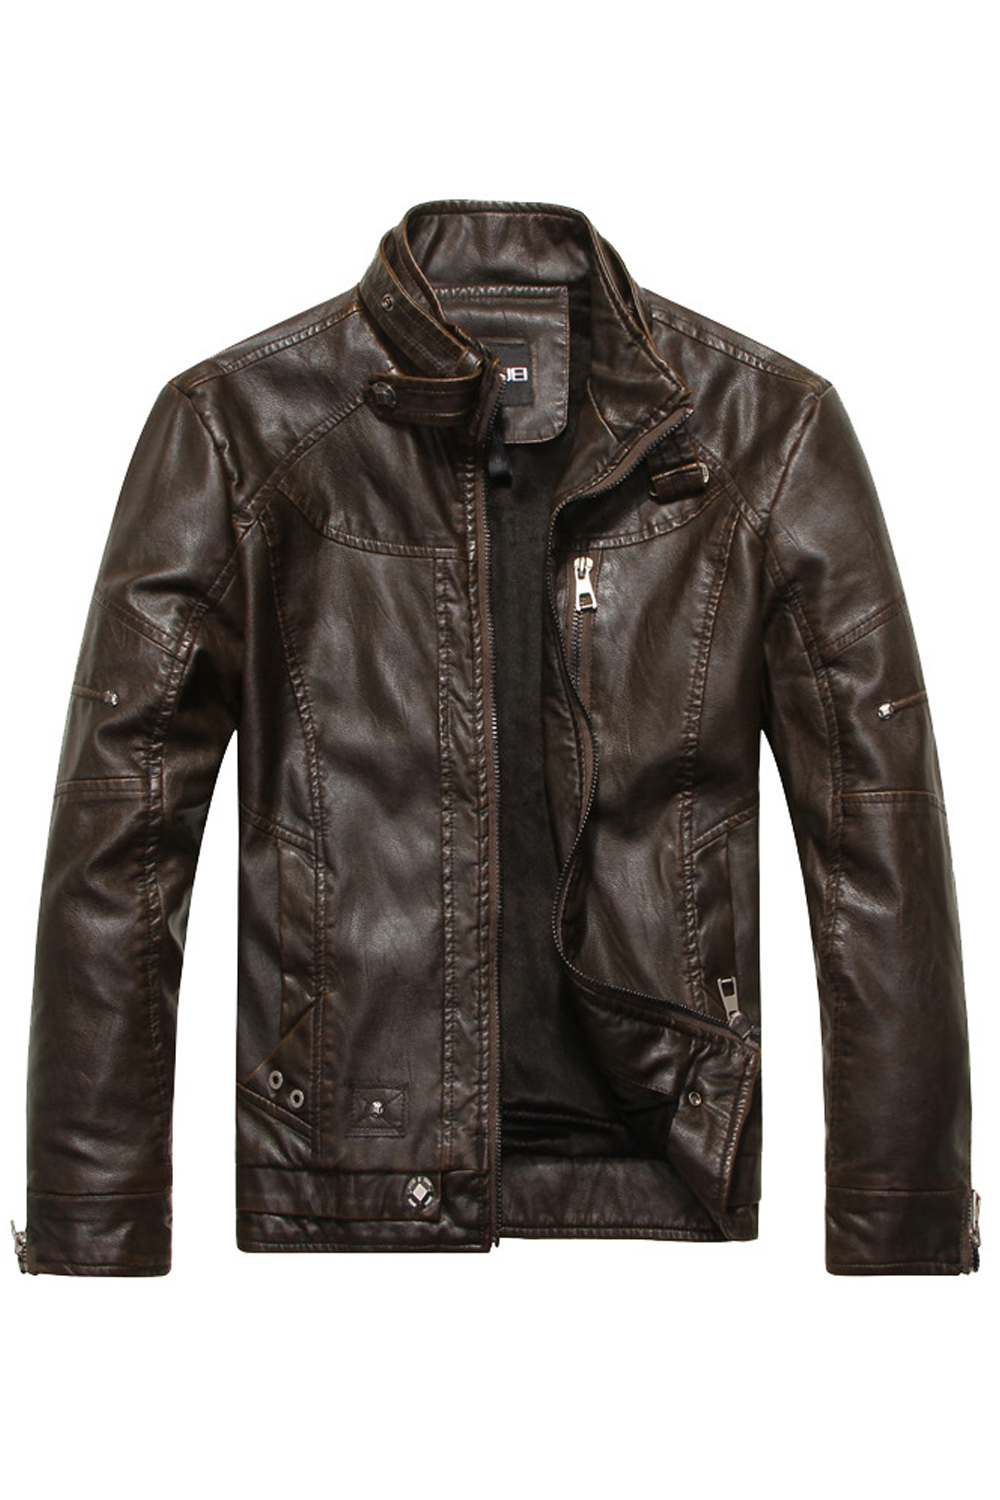 Zara Beez Men Stylish Long Sleeve Leather JacketMen Stylish Long Sleeve Leather Jacket